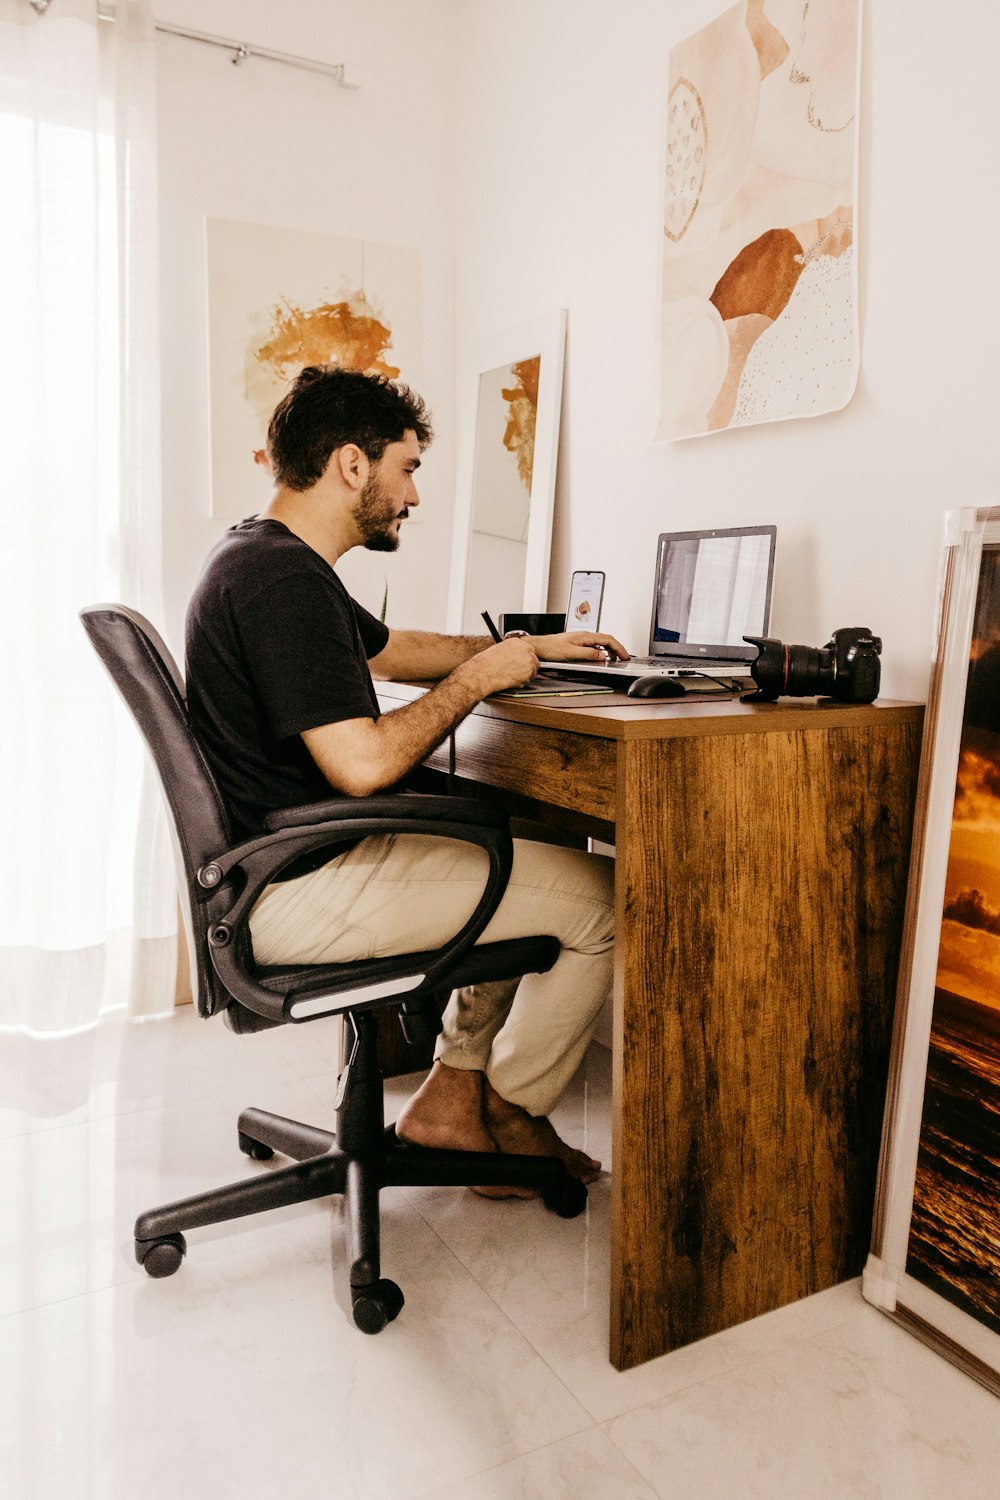 Ein Mann sitzt am Schreibtisch und arbeitet an einem Laptop